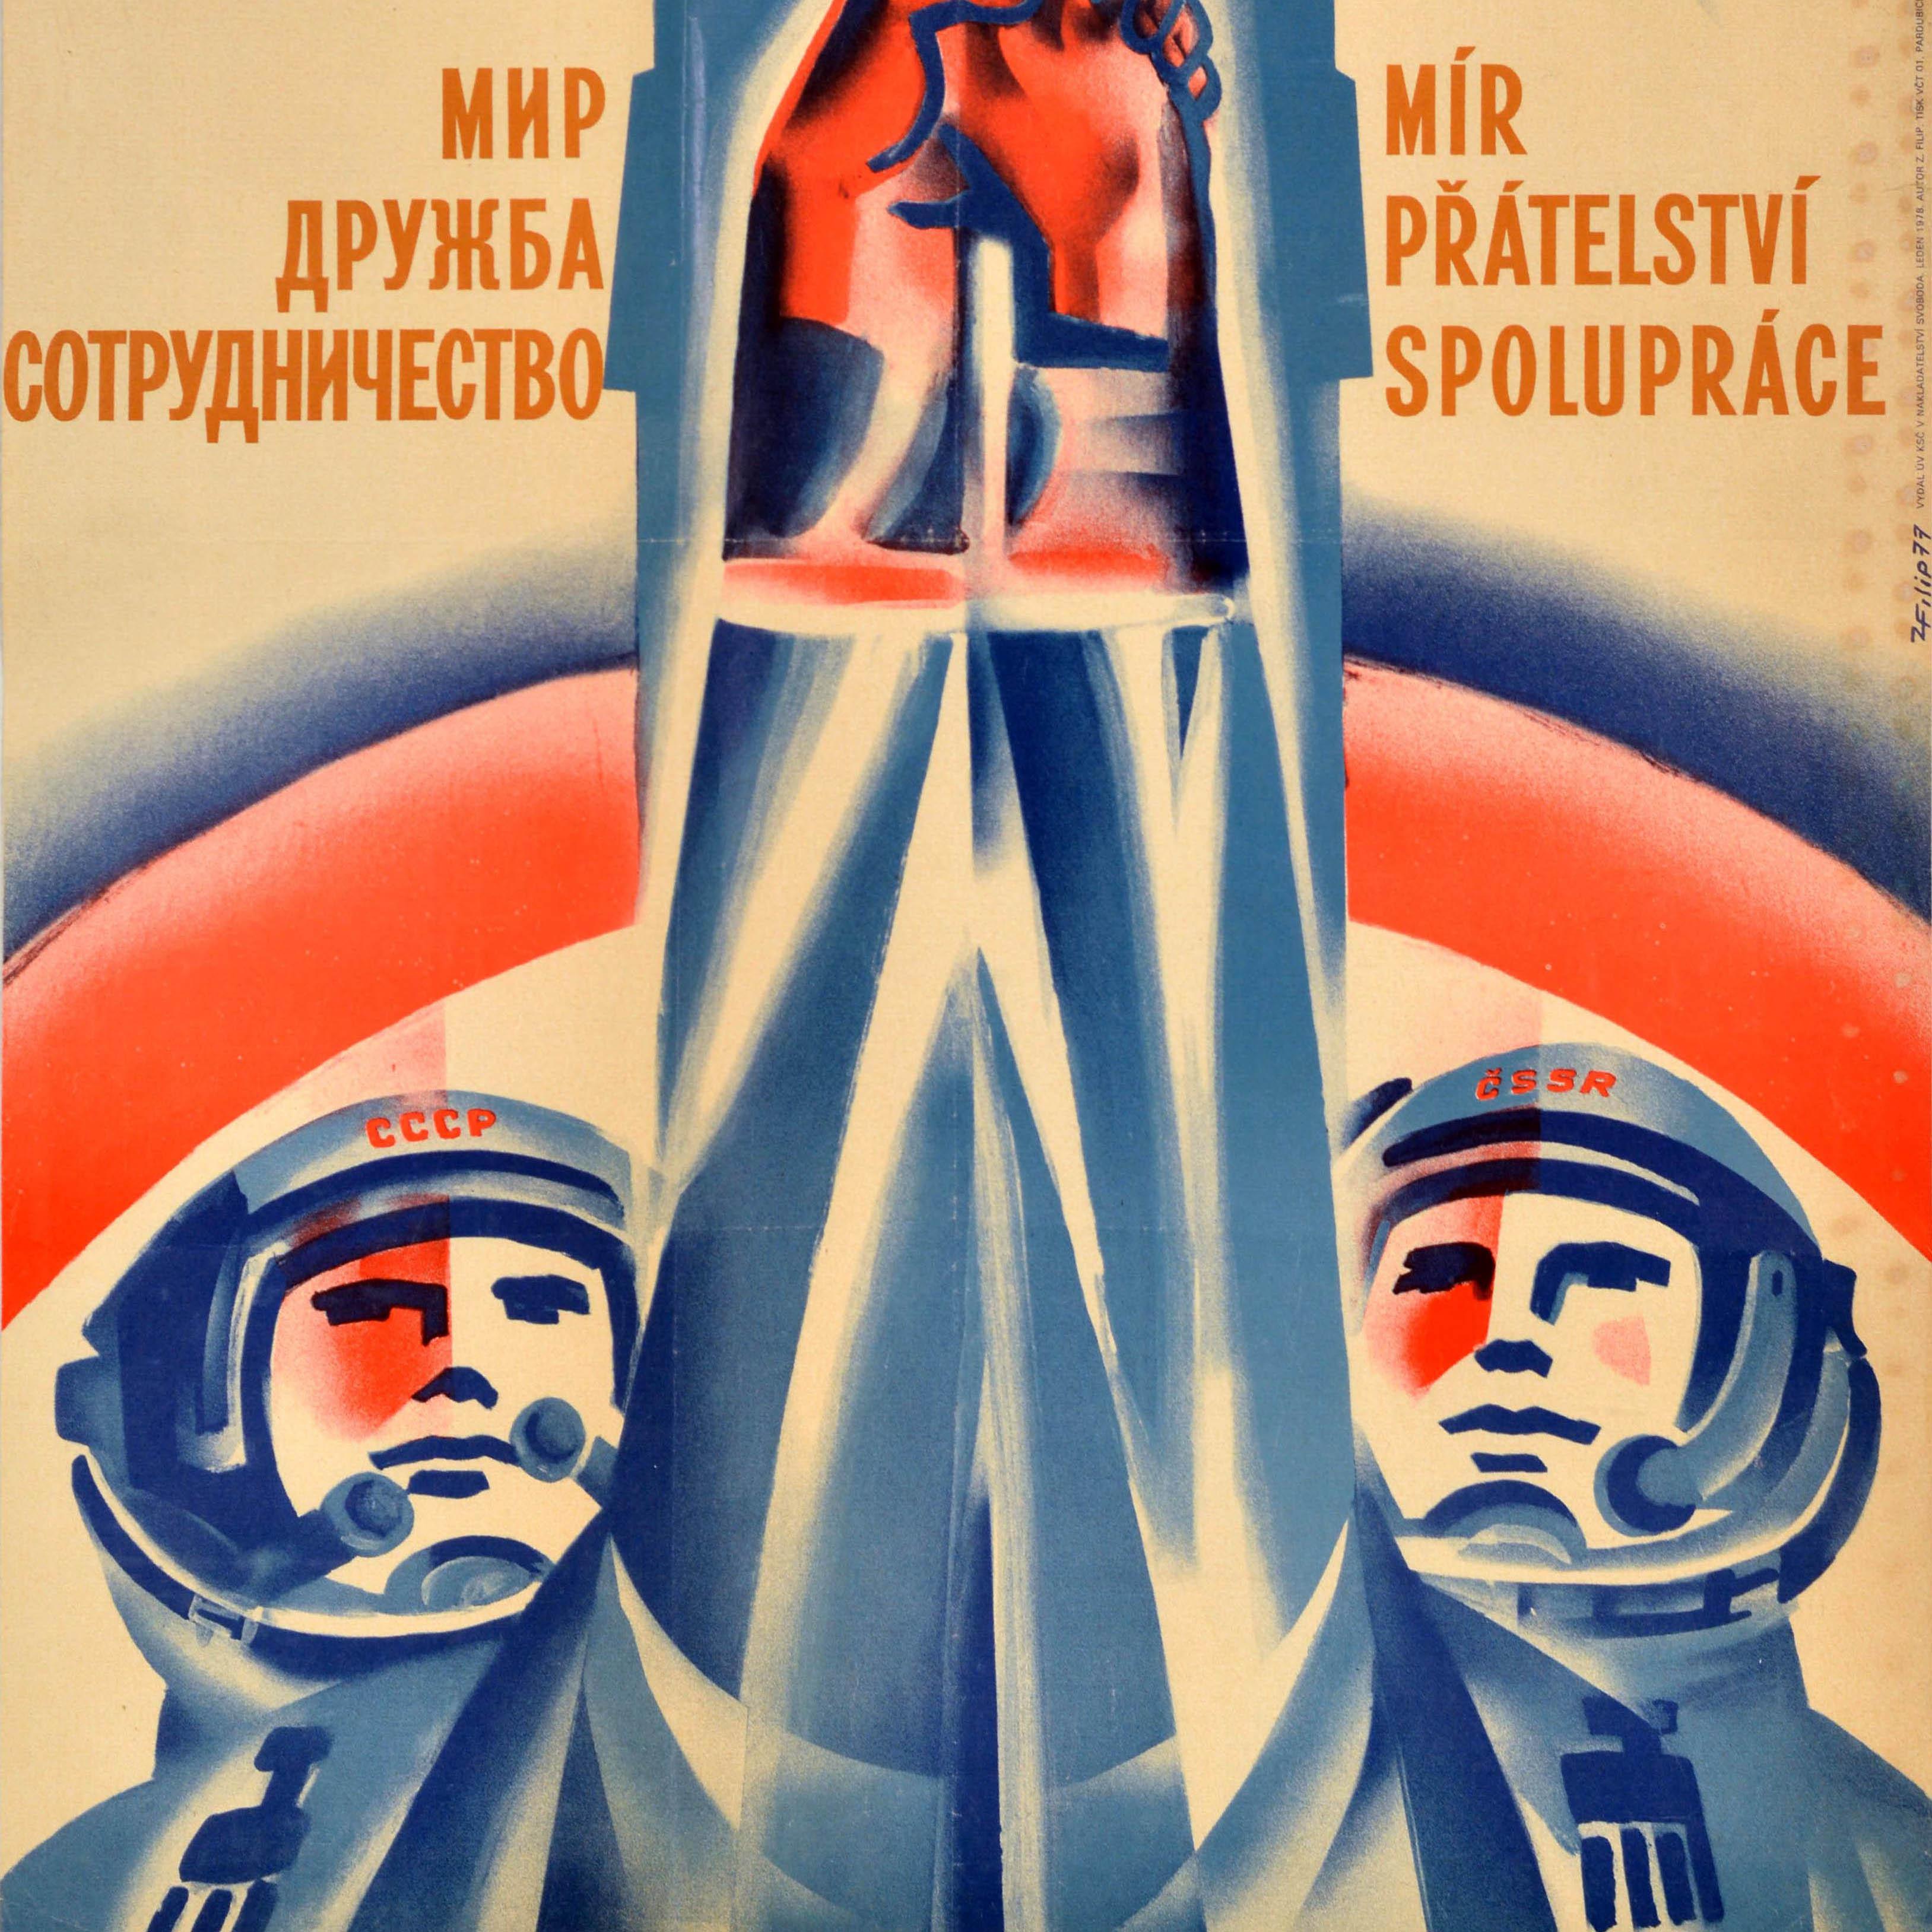 Affiche originale de propagande soviétique d'époque représentant deux cosmonautes avec l'URSS et la RSS tchèque sur les casques de leurs combinaisons spatiales, se tenant la main sur une fusée en arrière-plan avec la légende en russe et en tchèque